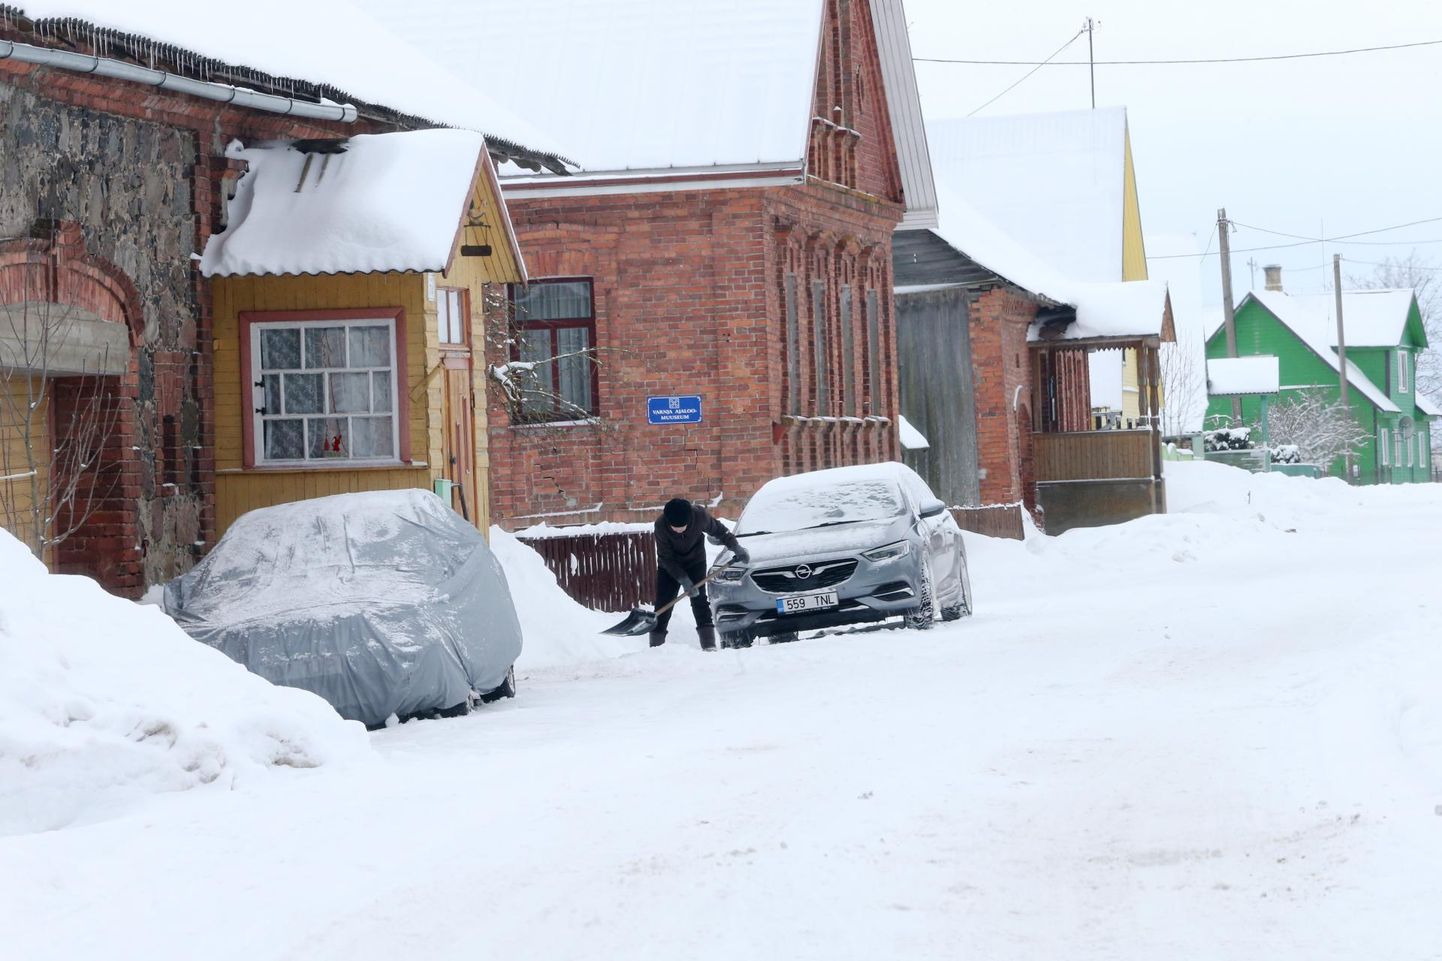 Eile lõunaajal oli Peipsiääre vallas Varnja külas vaikne, vaid üksik elanik rookis tänaval lund.